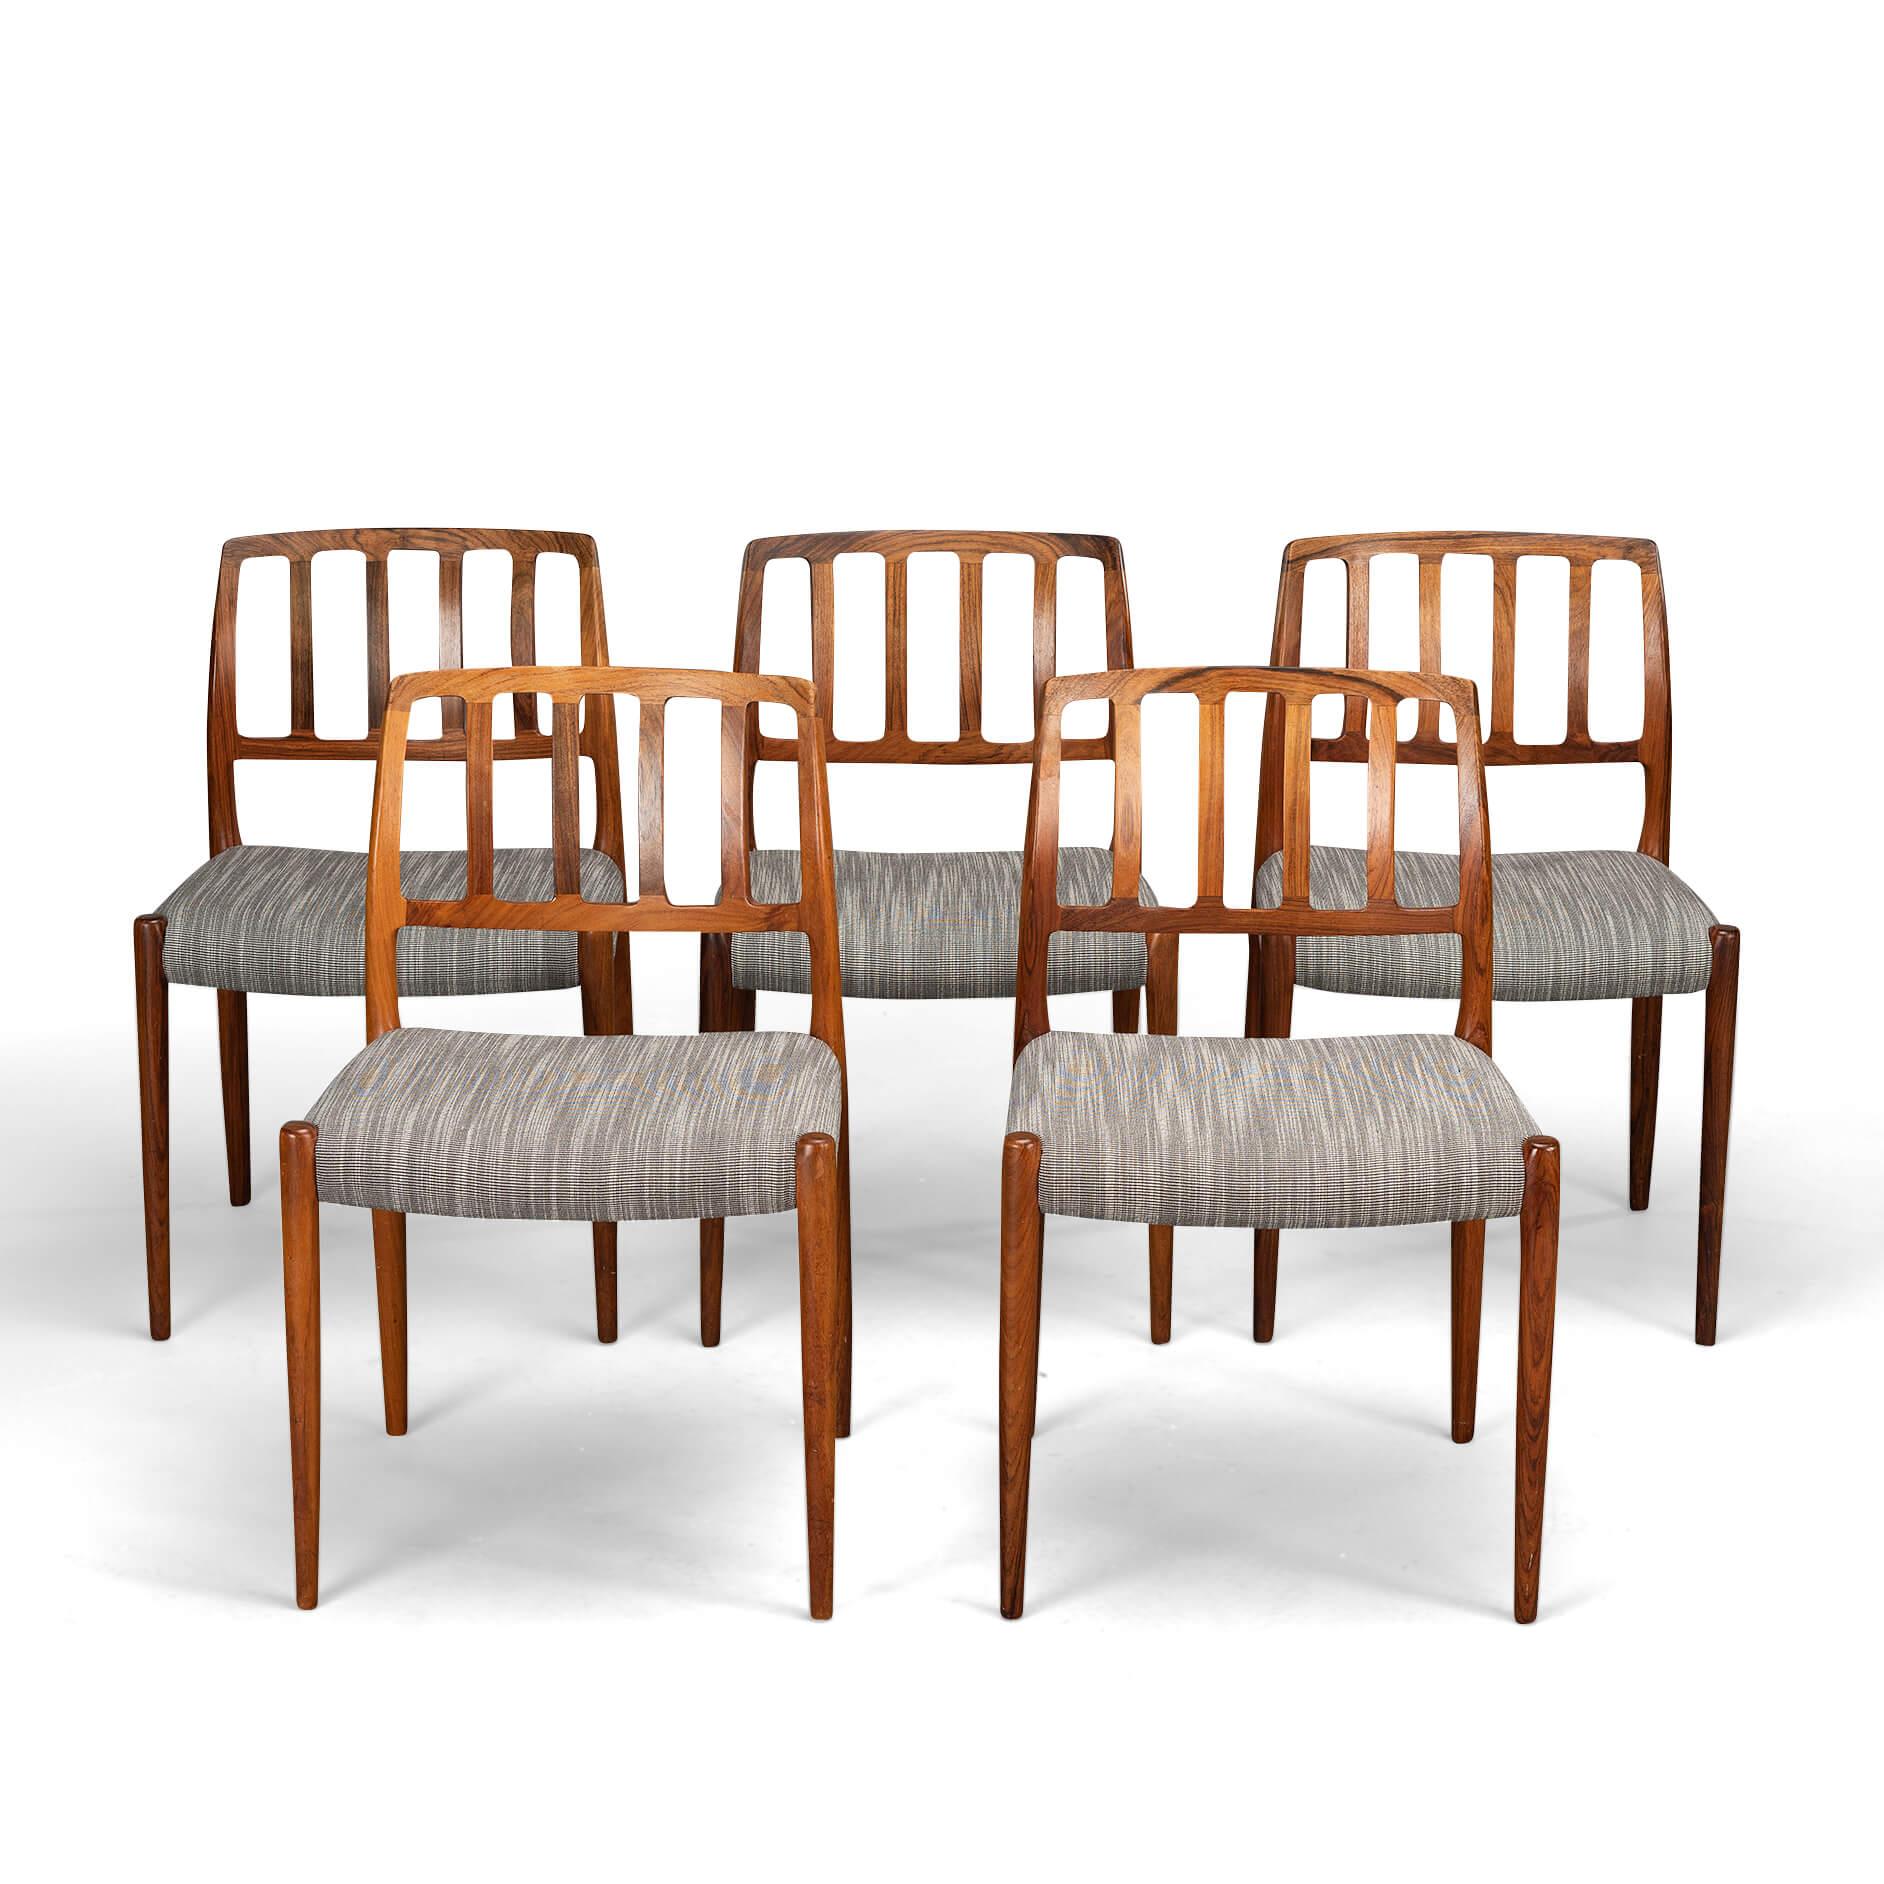 Esszimmerstuhl : Modell 83
Set aus fünf seltenen Niels O. Møller Esszimmerstühlen aus Palisanderholz Modell 83. Hergestellt in Dänemark in den 1960er Jahren. Diese formschönen Stühle werden von J.L. hergestellt. Møller Mobelfabrik. Sie sind aus